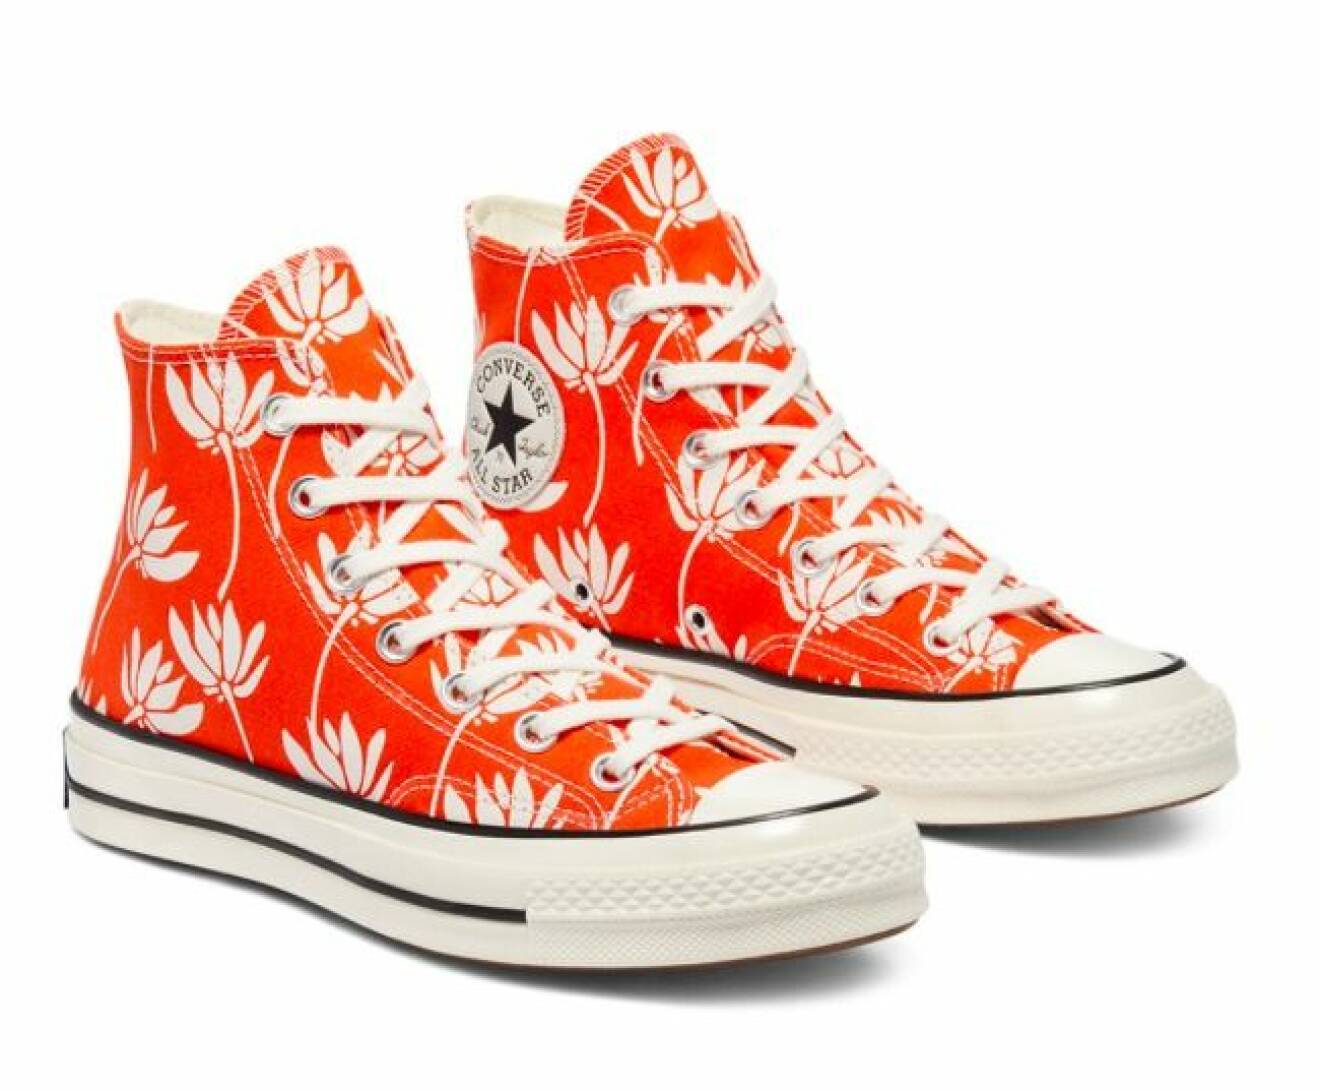 Mönstrade Converse med högt skaft i rött med vita blommor på. Sneakers från Converse.